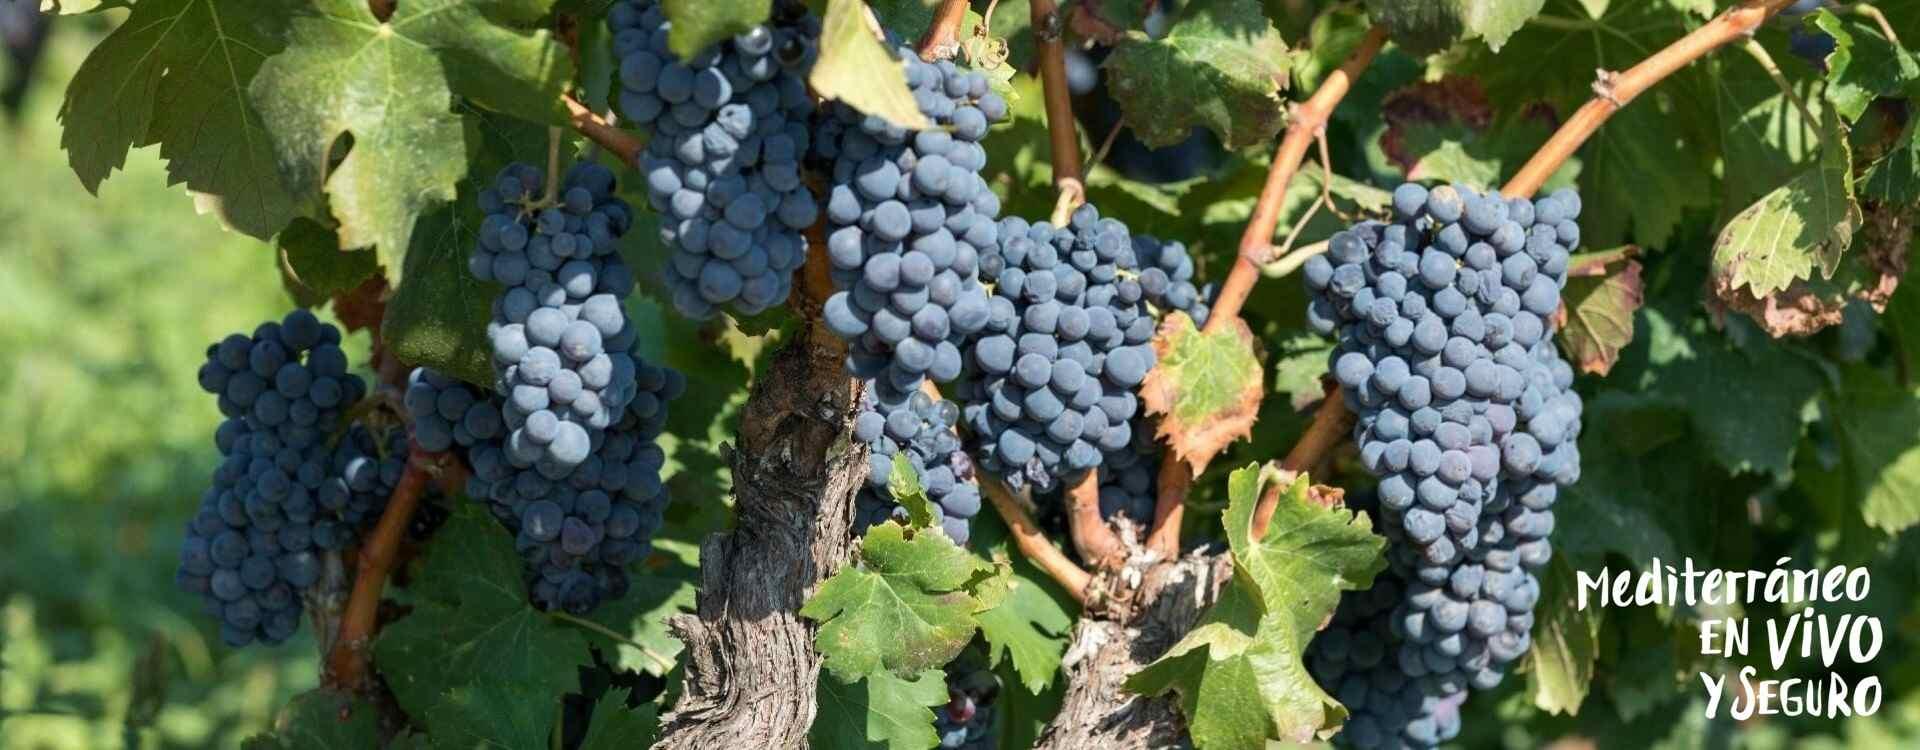 Imagen de la uva en los viñedos de Llíber